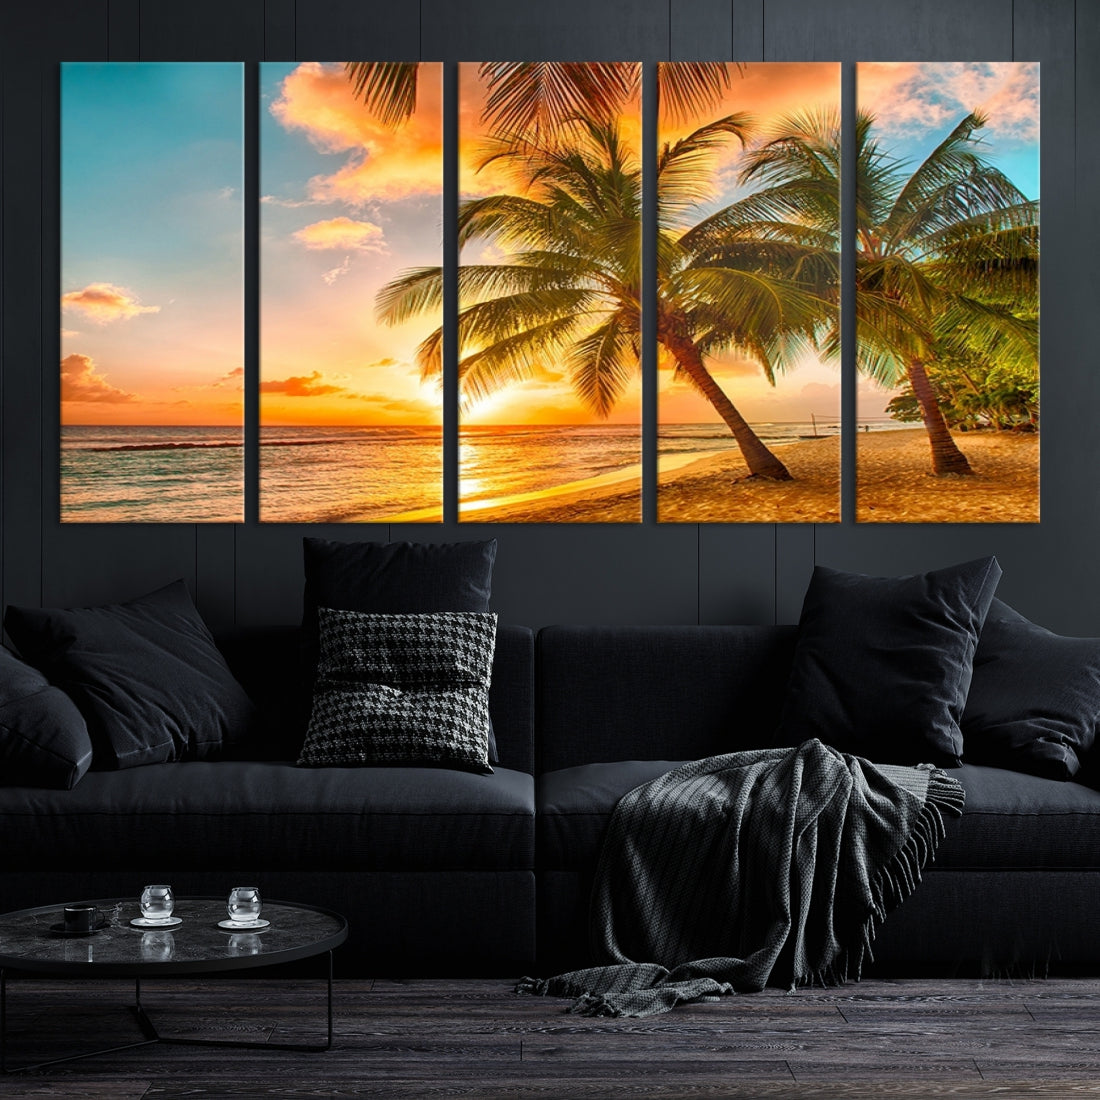 Large Wall Art Canvas Beautiful Palms on Beach at Sunset